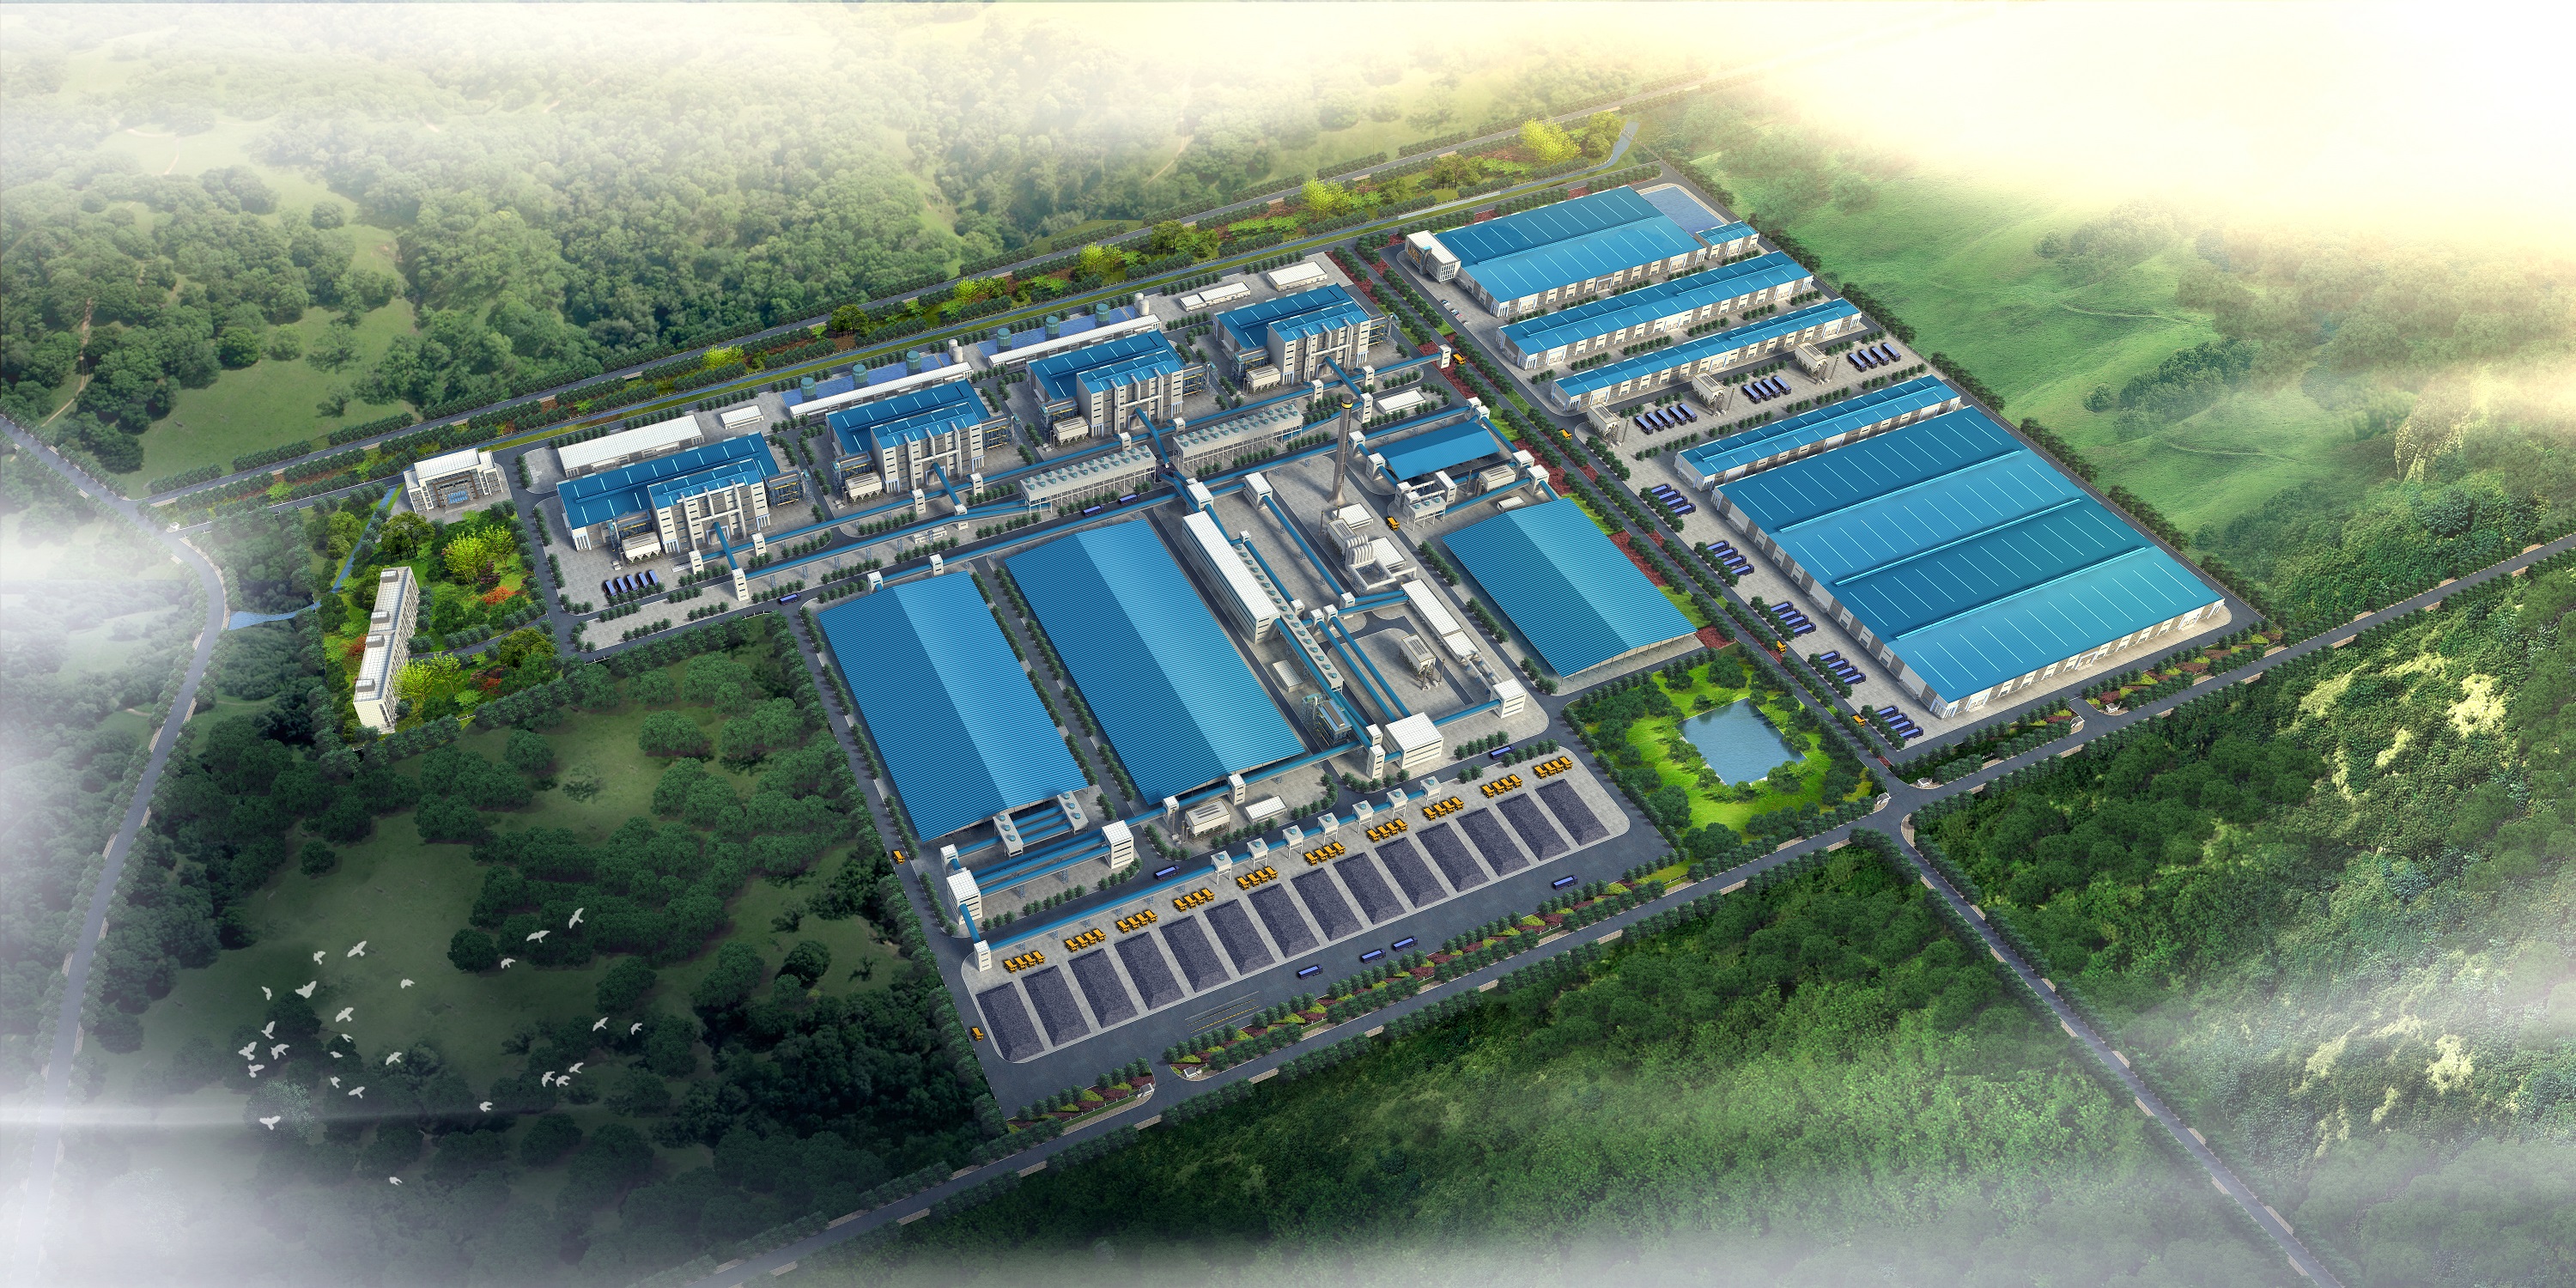 重慶大朗冶金新材料有限公司年產50萬噸鐵合金項目